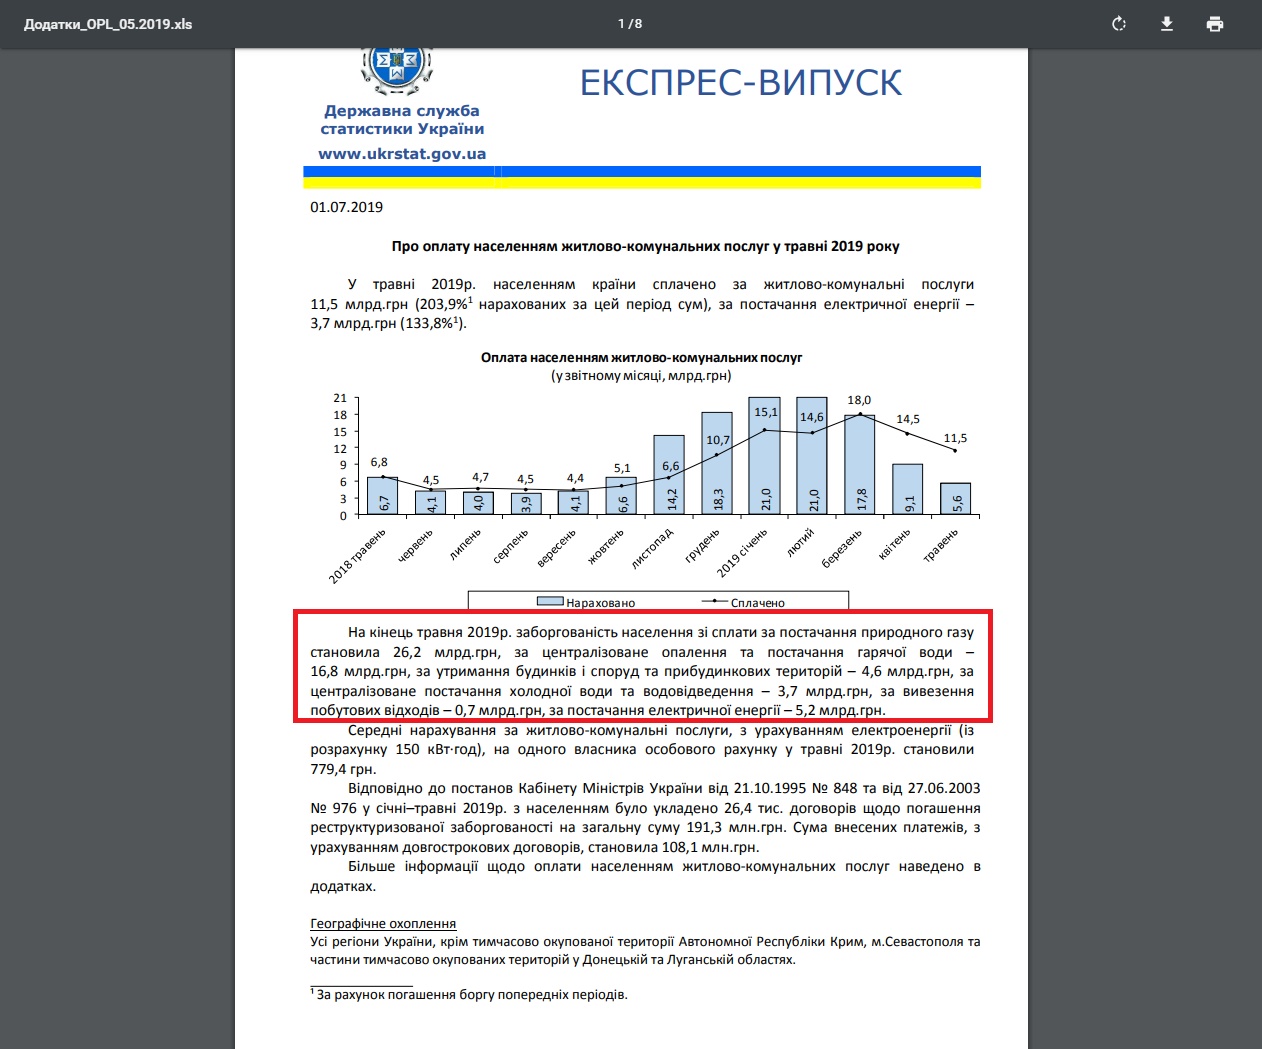 http://www.ukrstat.gov.ua/express/expr2019/07/92.pdf